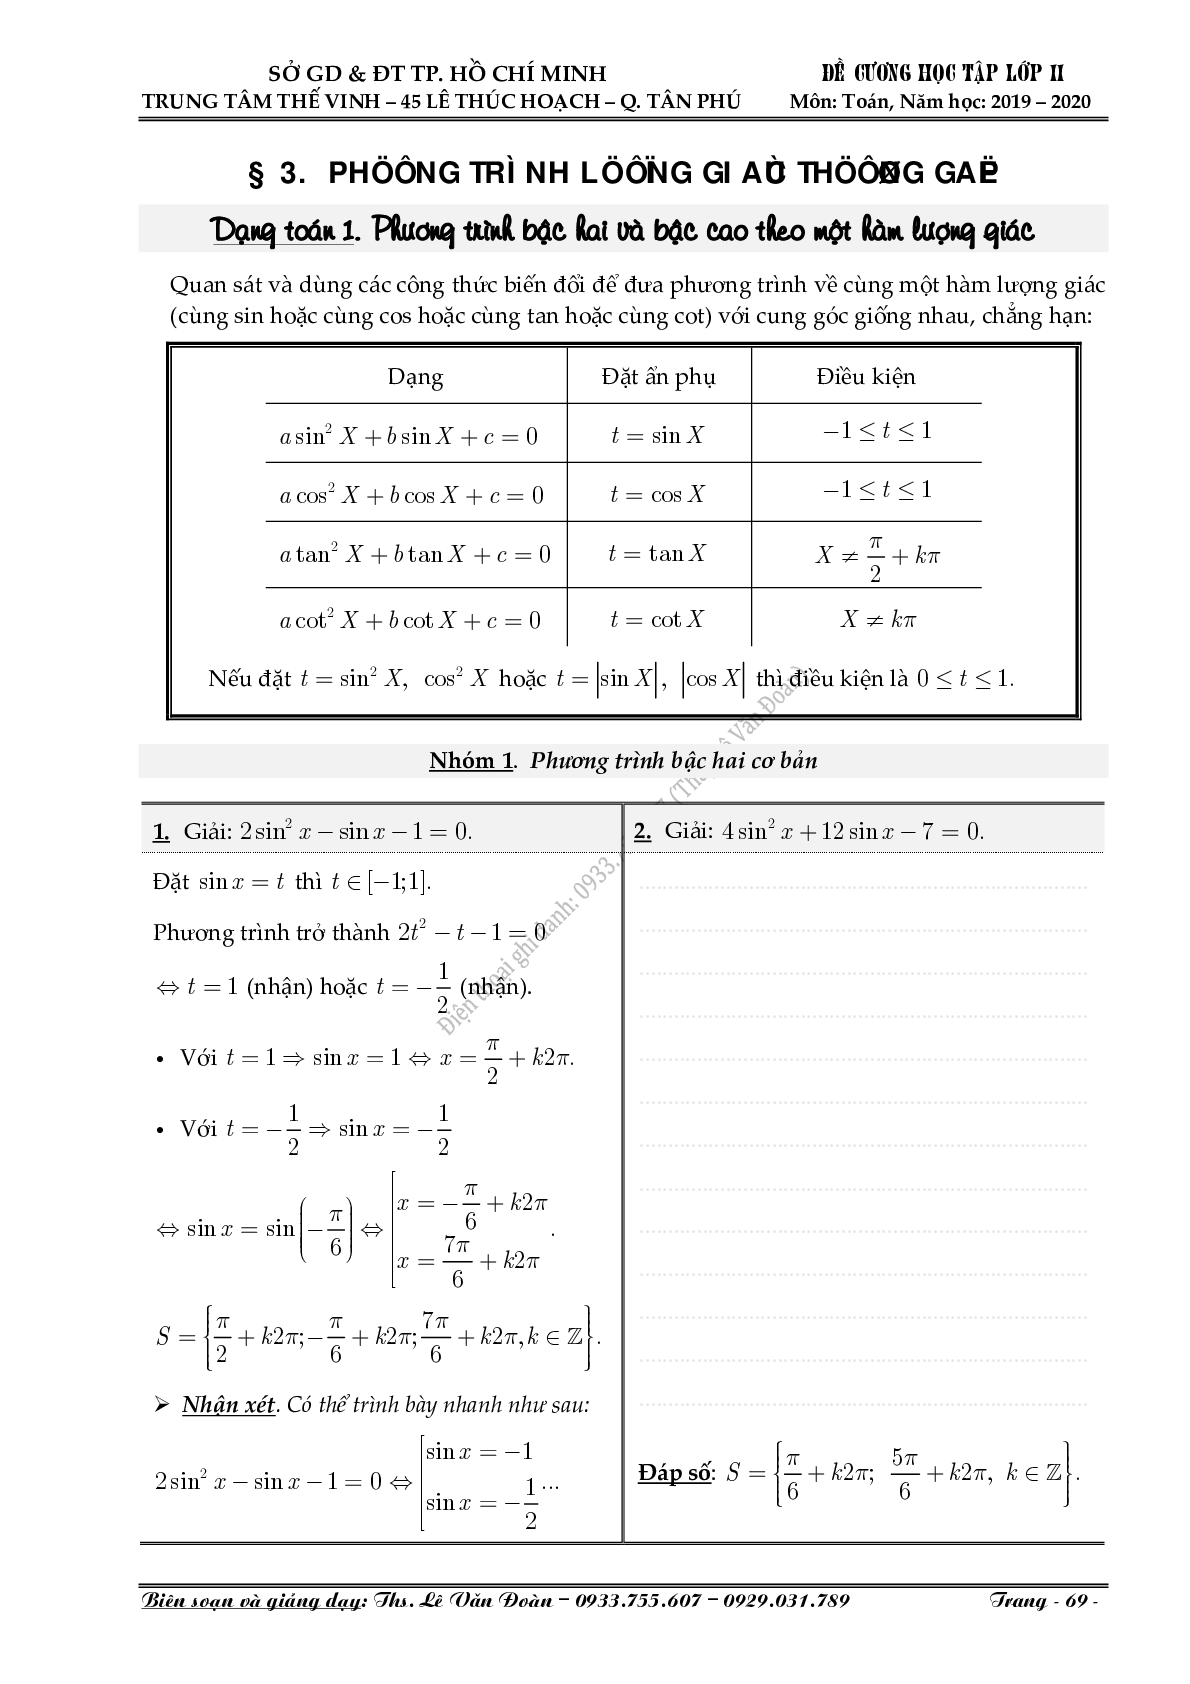 Chuyên đề Phương trình lượng giác thường gặp 2022 hay, chọn lọc (trang 1)